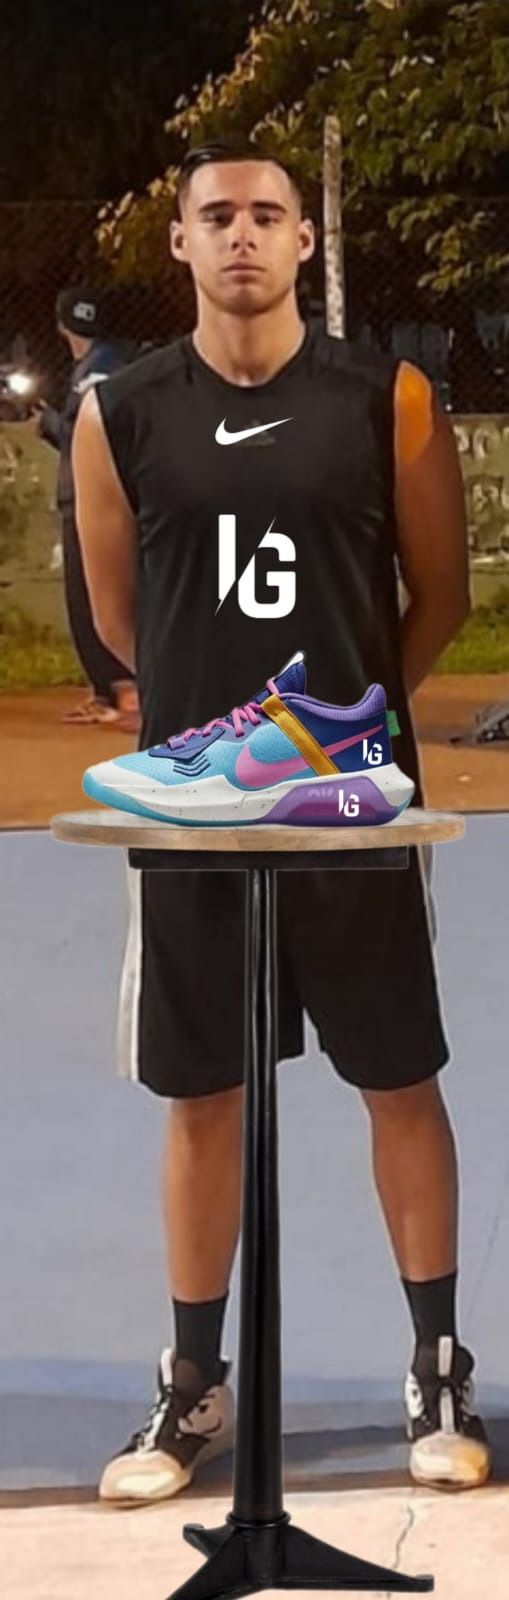 Los rumores se confirman, Nike lanzar las legendarias zapatillas de baloncesto IG11